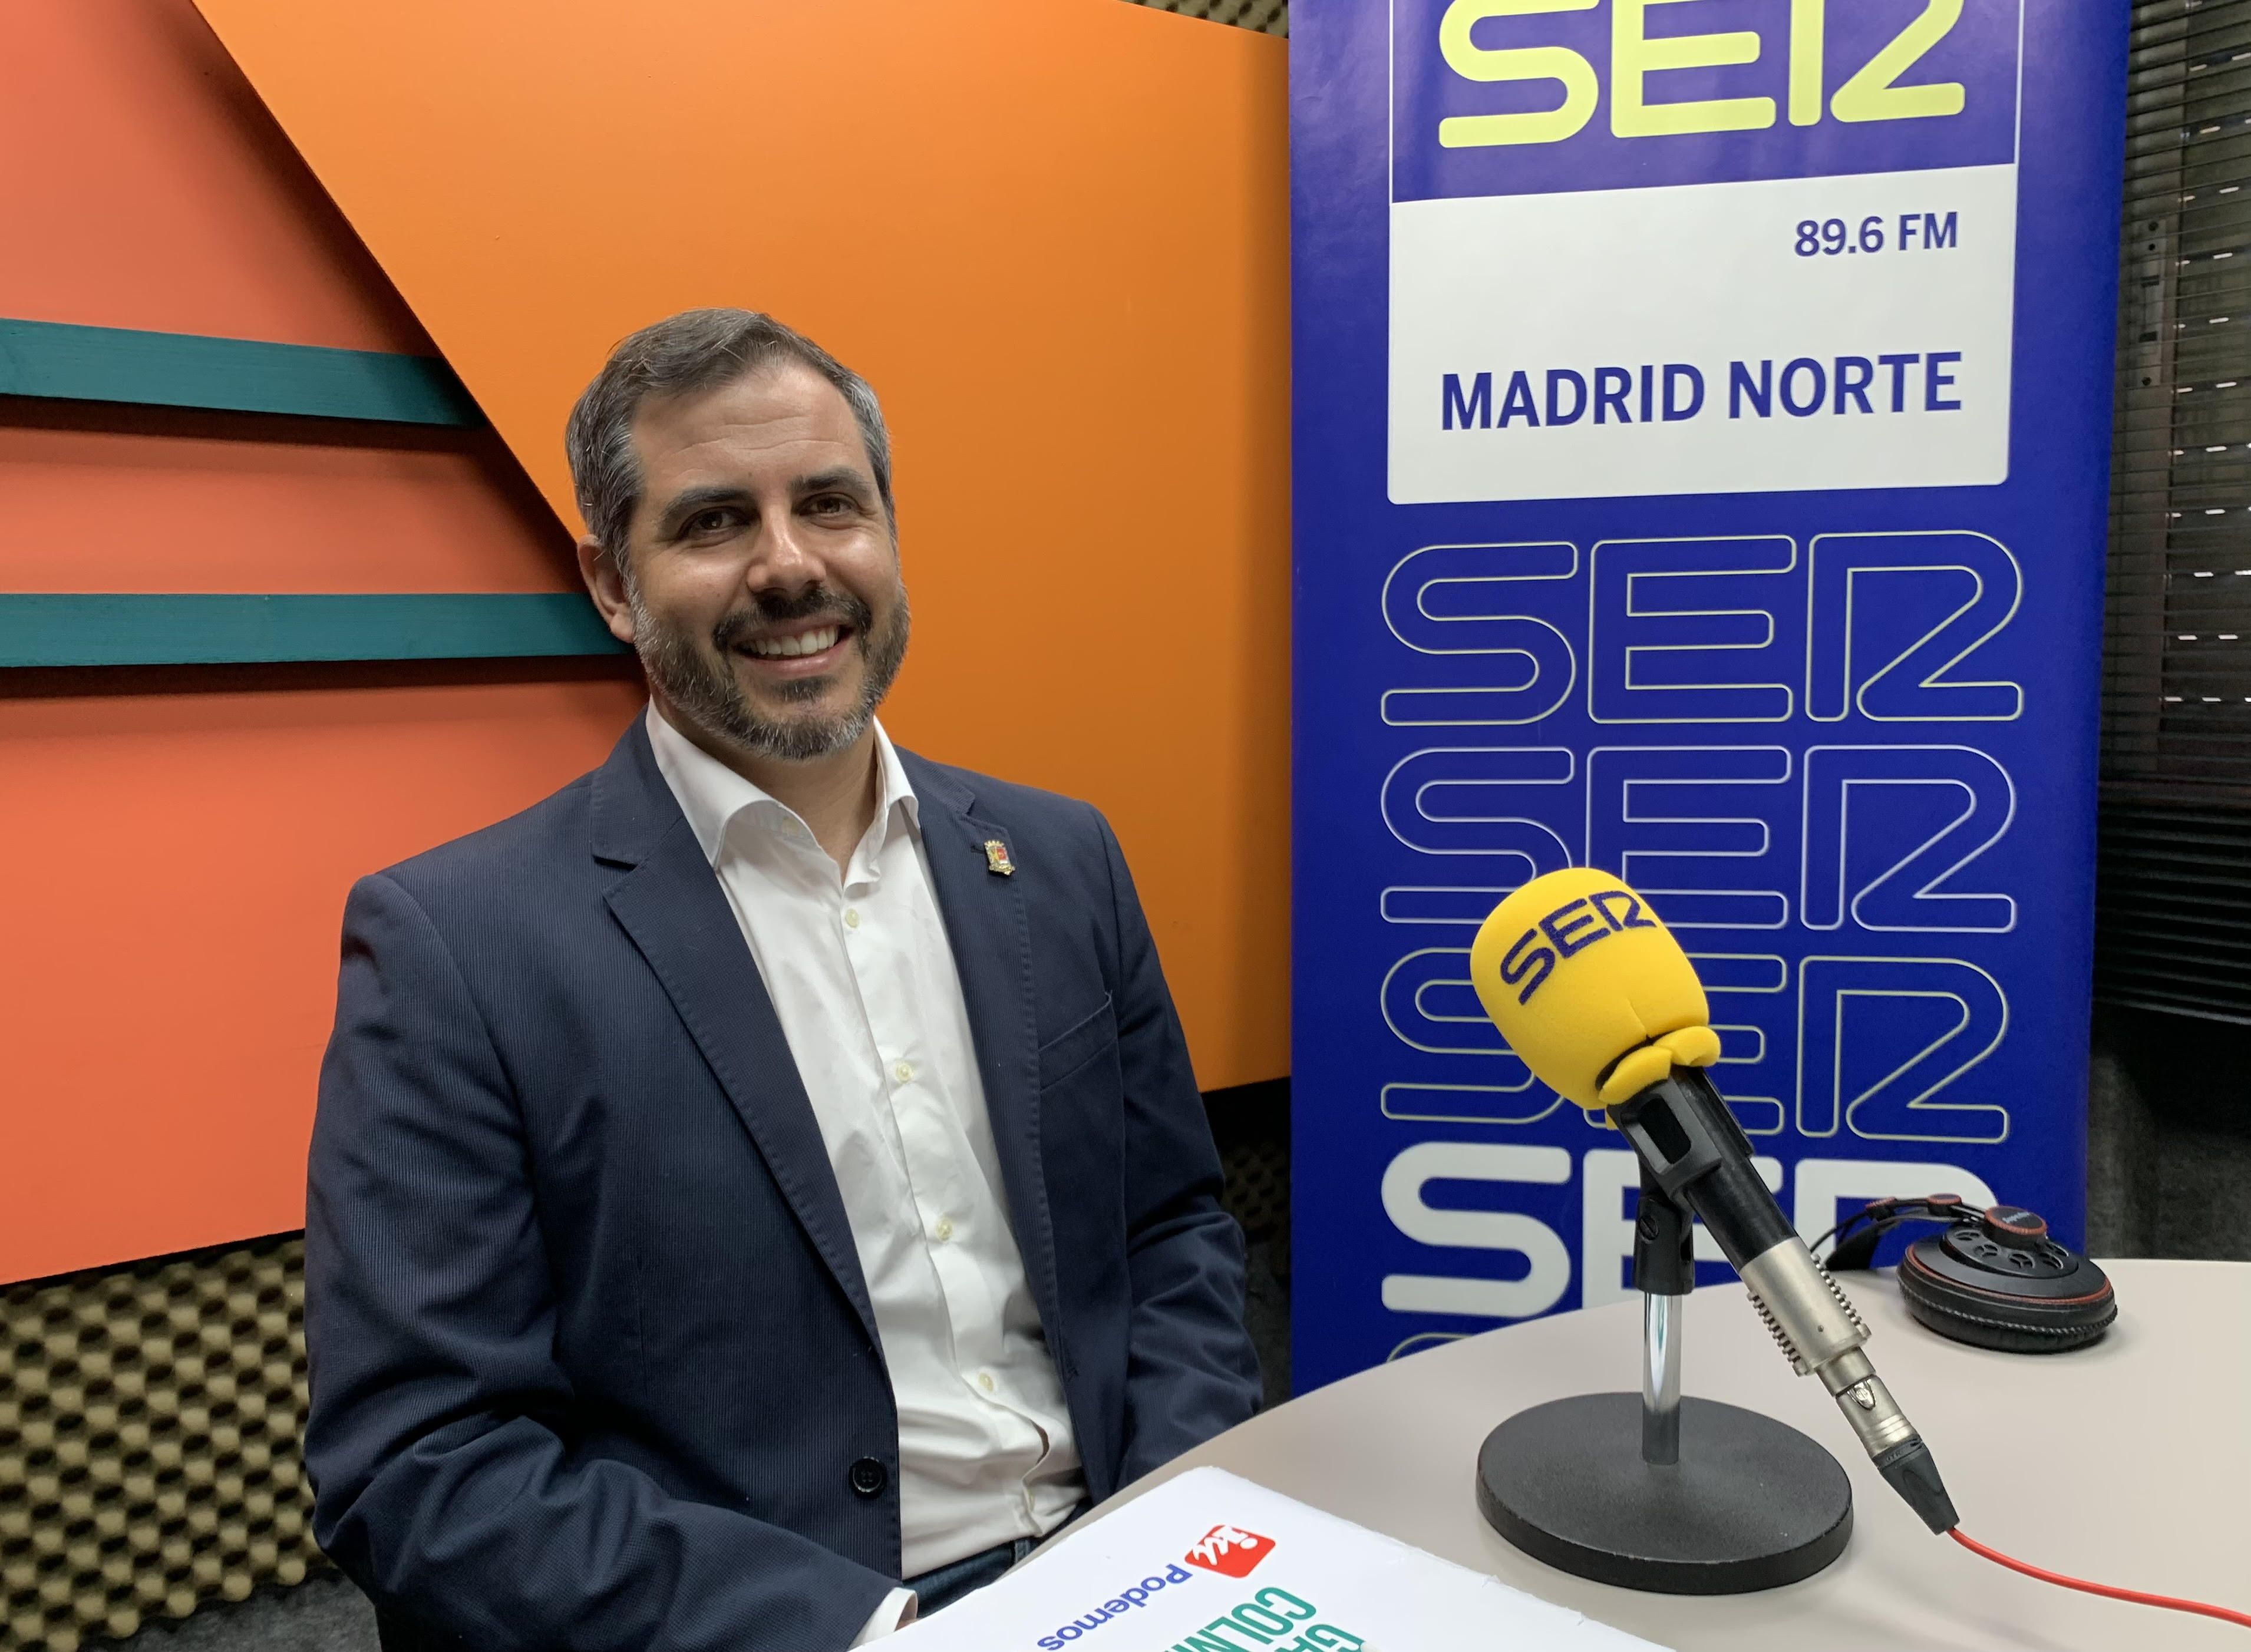 Entrevista a Carlos Gómez, candidato a la alcaldía de Colmenar Viejo por Ganemos en la programación especial por el 28M de SER Madrid Norte